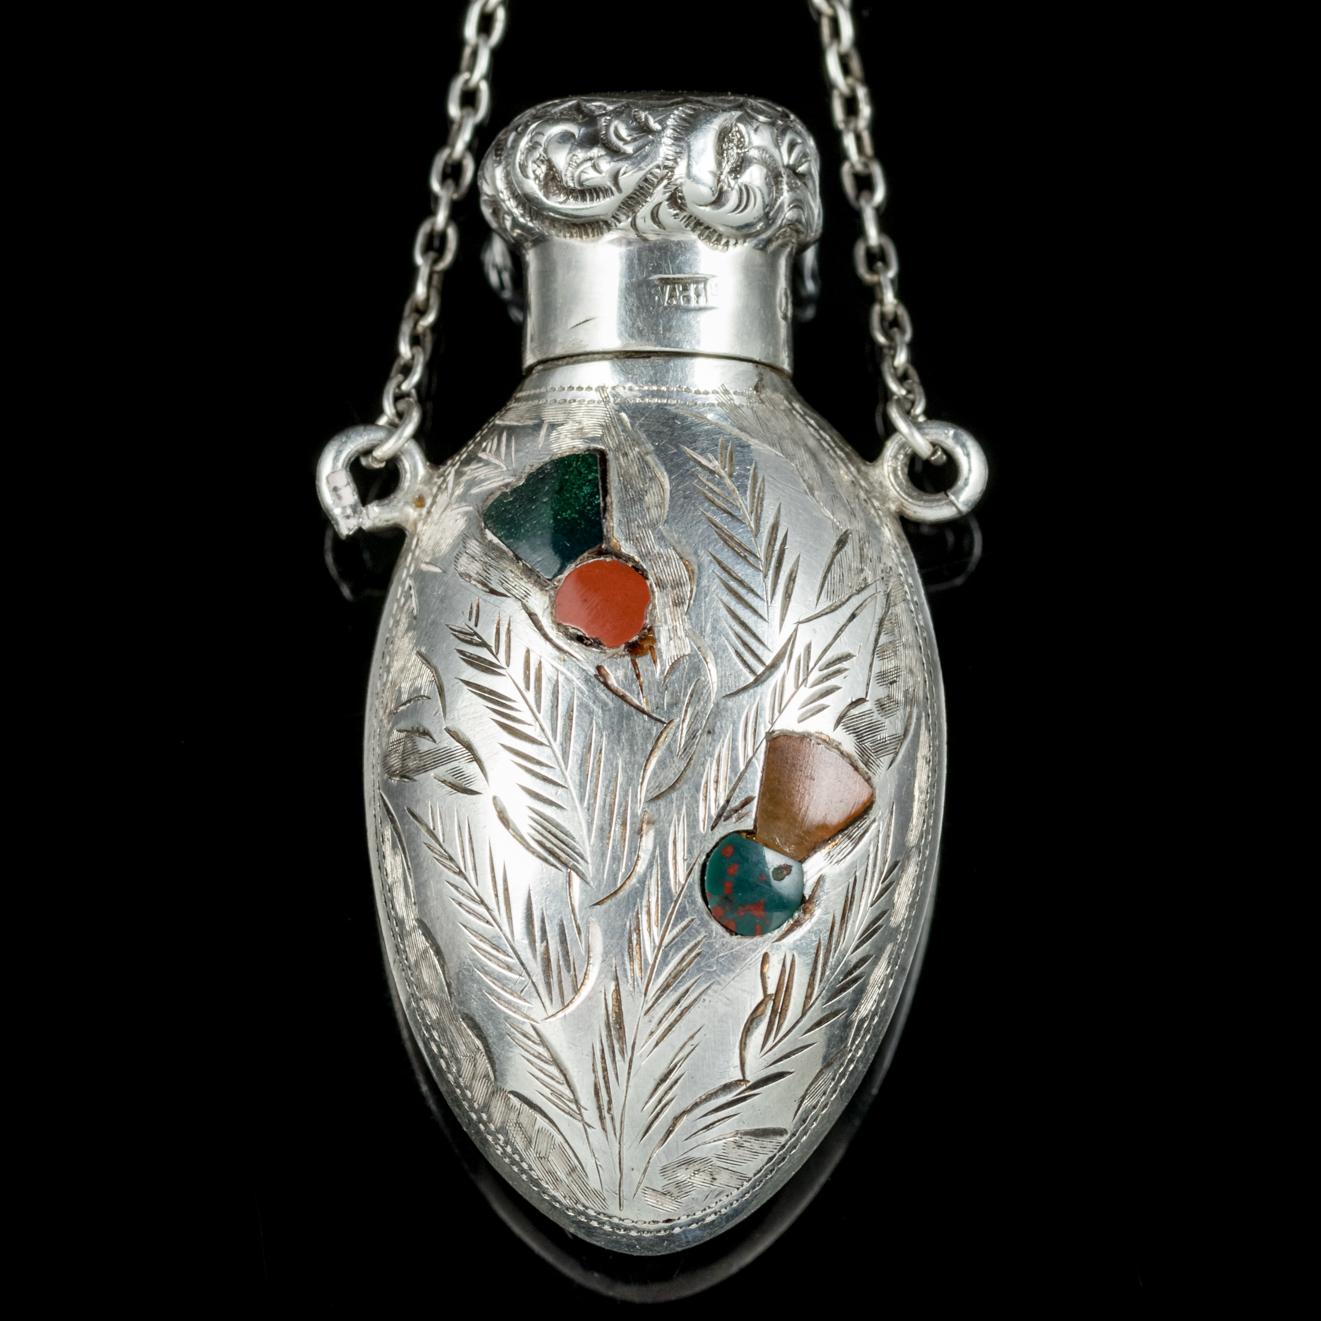 antique silver perfume bottle necklace